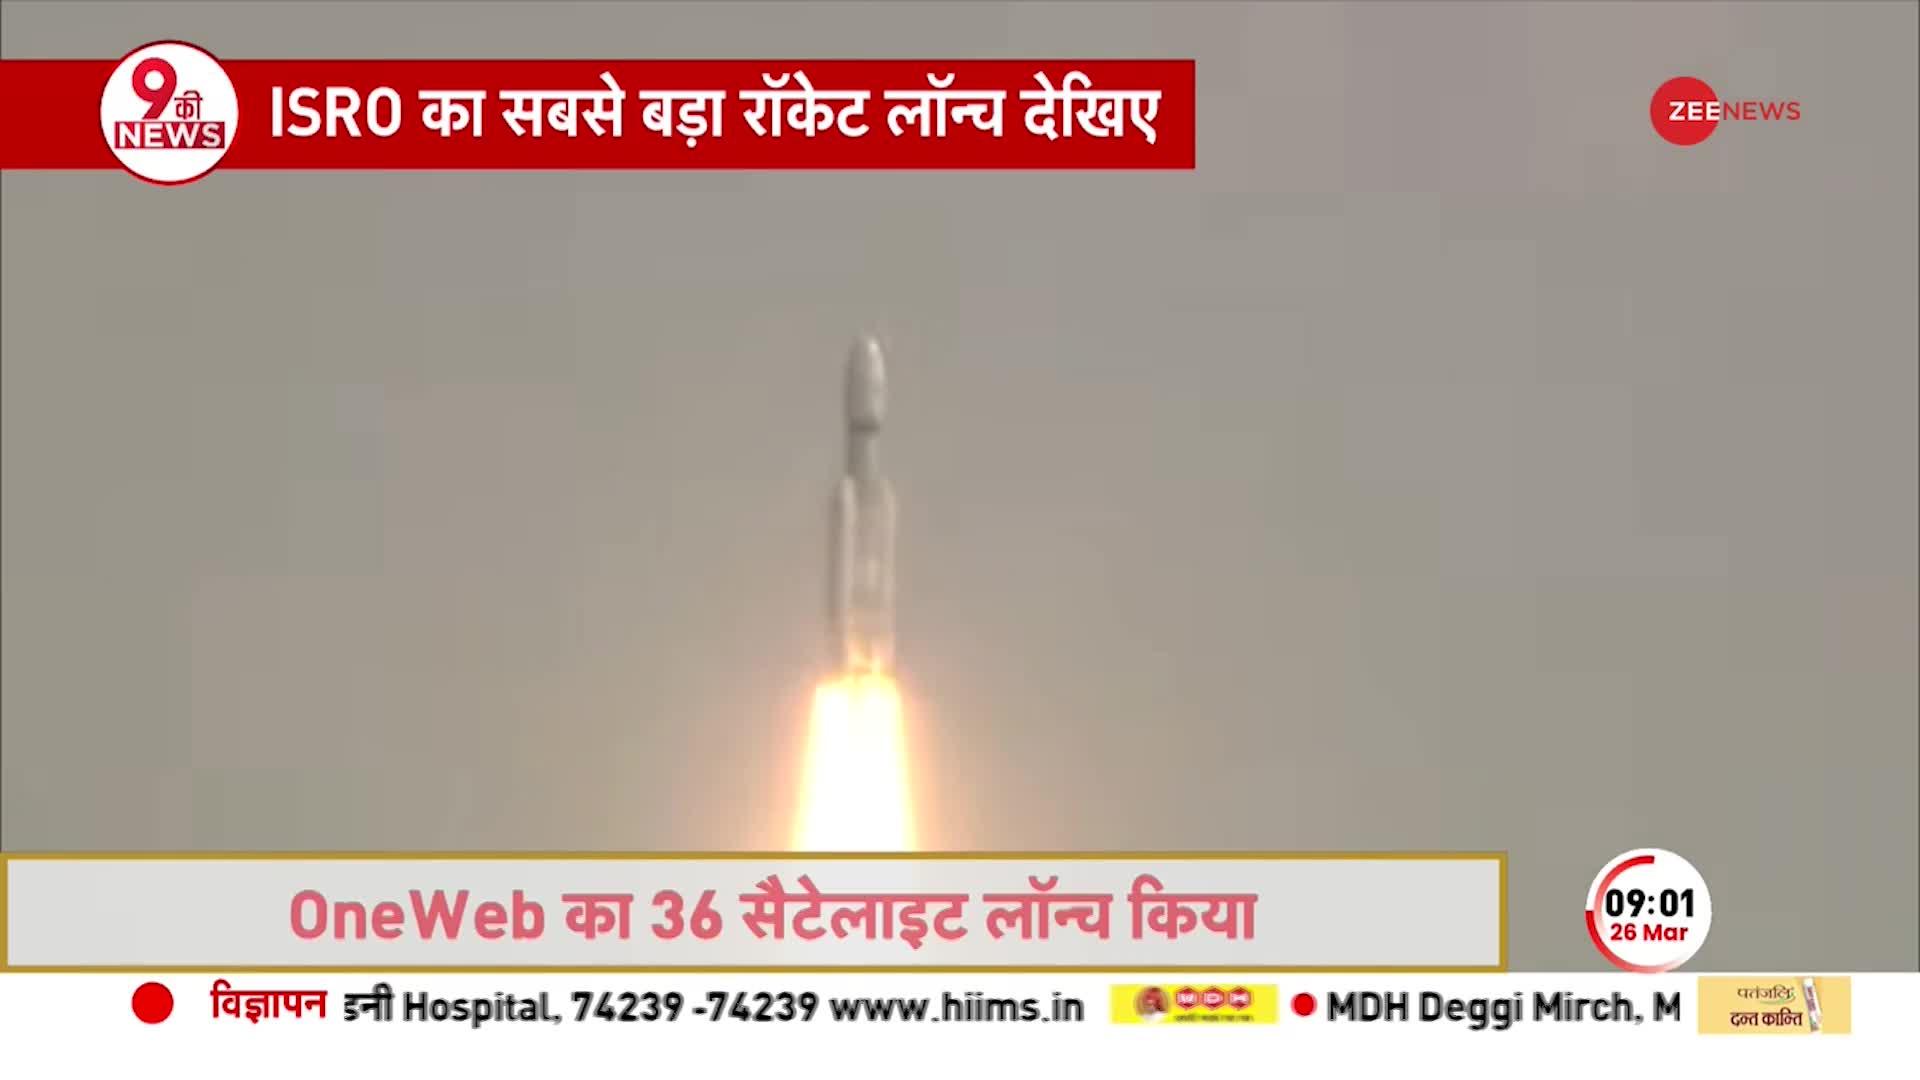 ISRO का सबसे बड़ा रॉकेट लॉन्च देखिए, OneWeb का 36 सैटेलाइट लांच किया ISRO Rocket mission